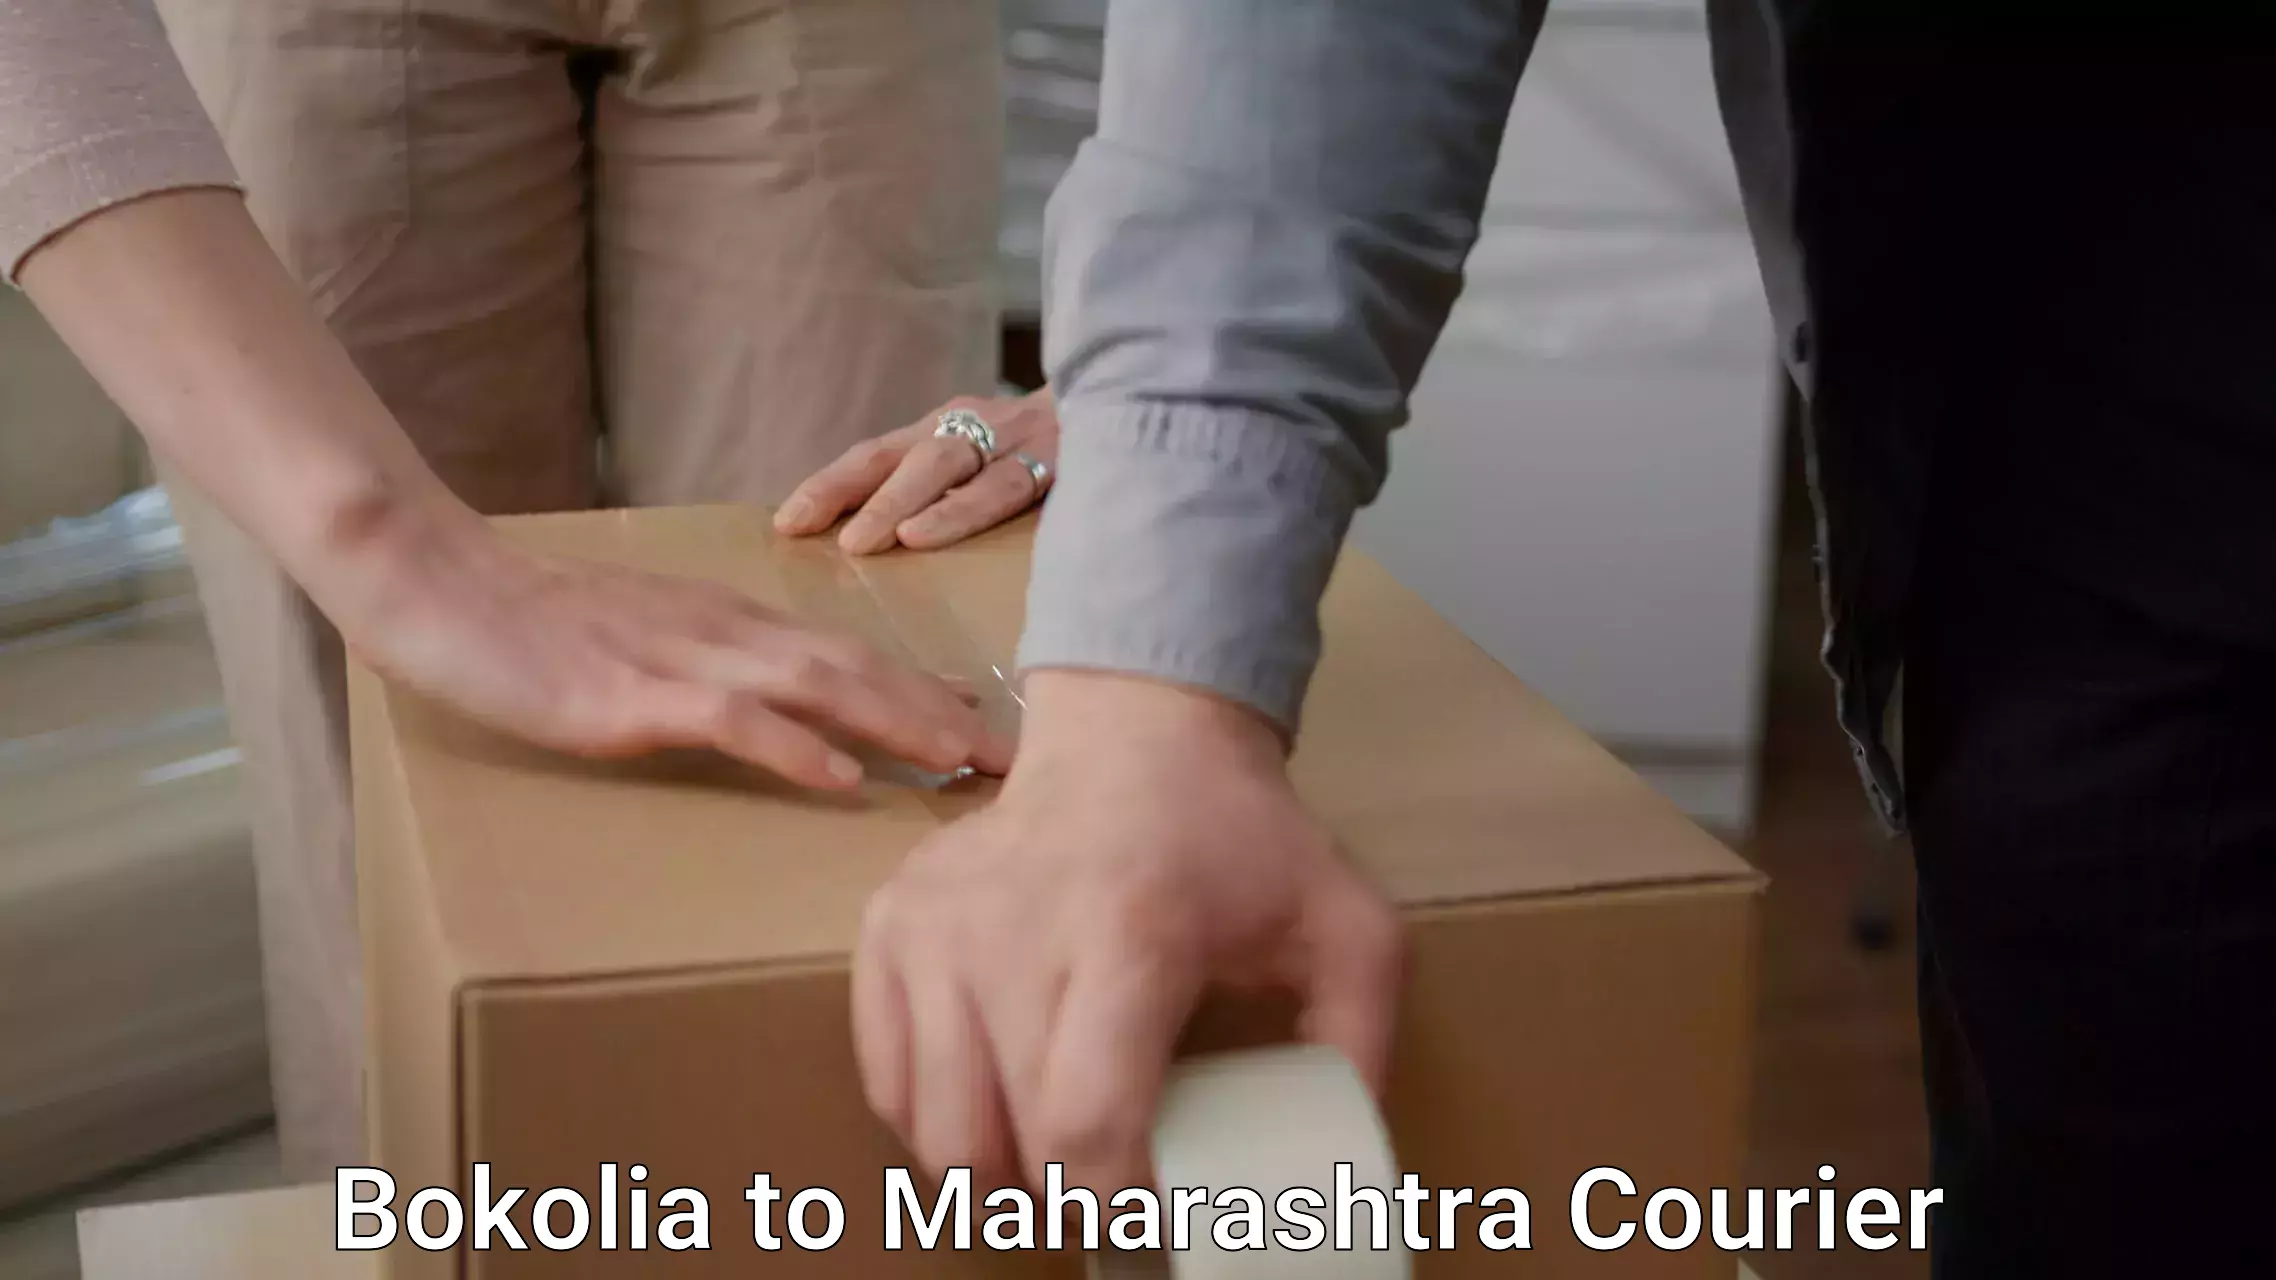 Reliable movers Bokolia to Maharashtra